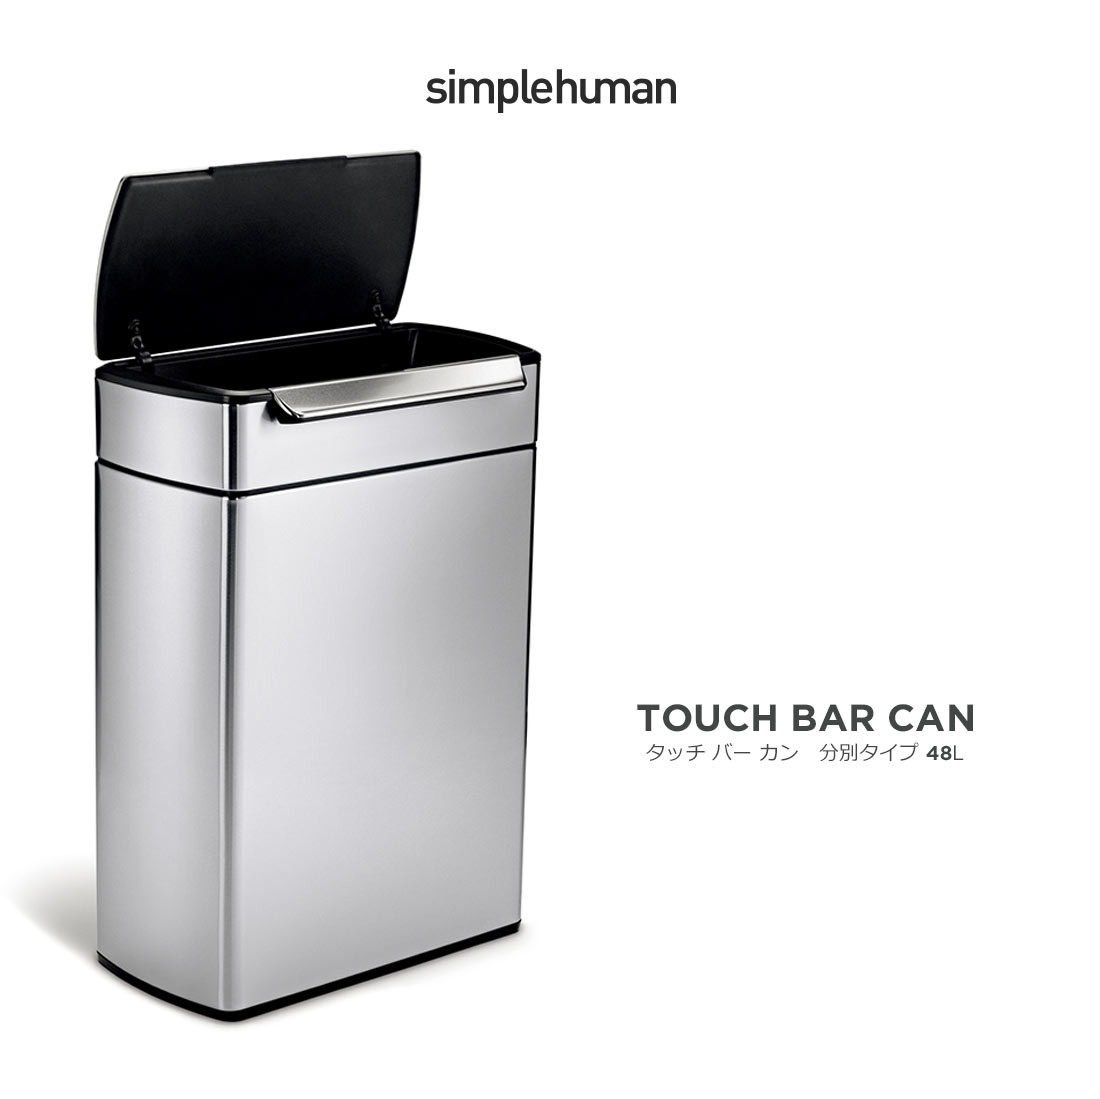 Simple Human　TOUCH BAR CAN 分別タイプ 48Lシンプルヒューマン/デュアルタッチバーカン/48リットル/ゴミ箱 /プラスチック/レクタンギュラーステップカン/ふた付きゴミ箱/分別/横型ゴミ箱/838810015835